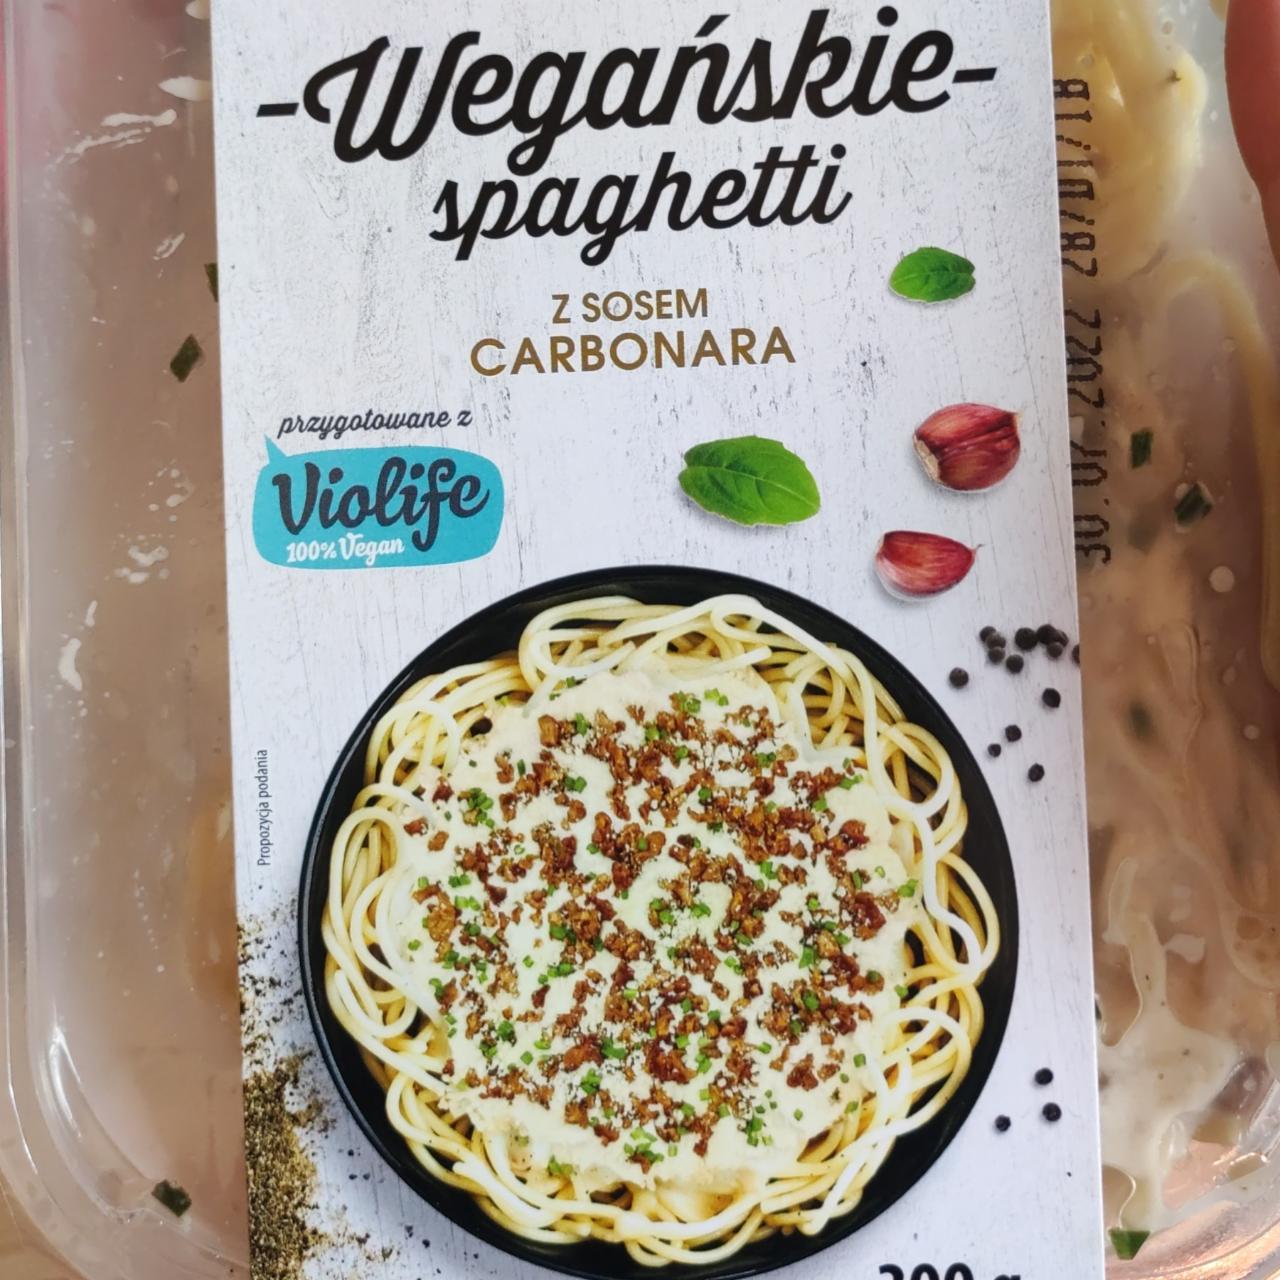 Zdjęcia - wegańskie spaghetti z sosem carbonara Violife